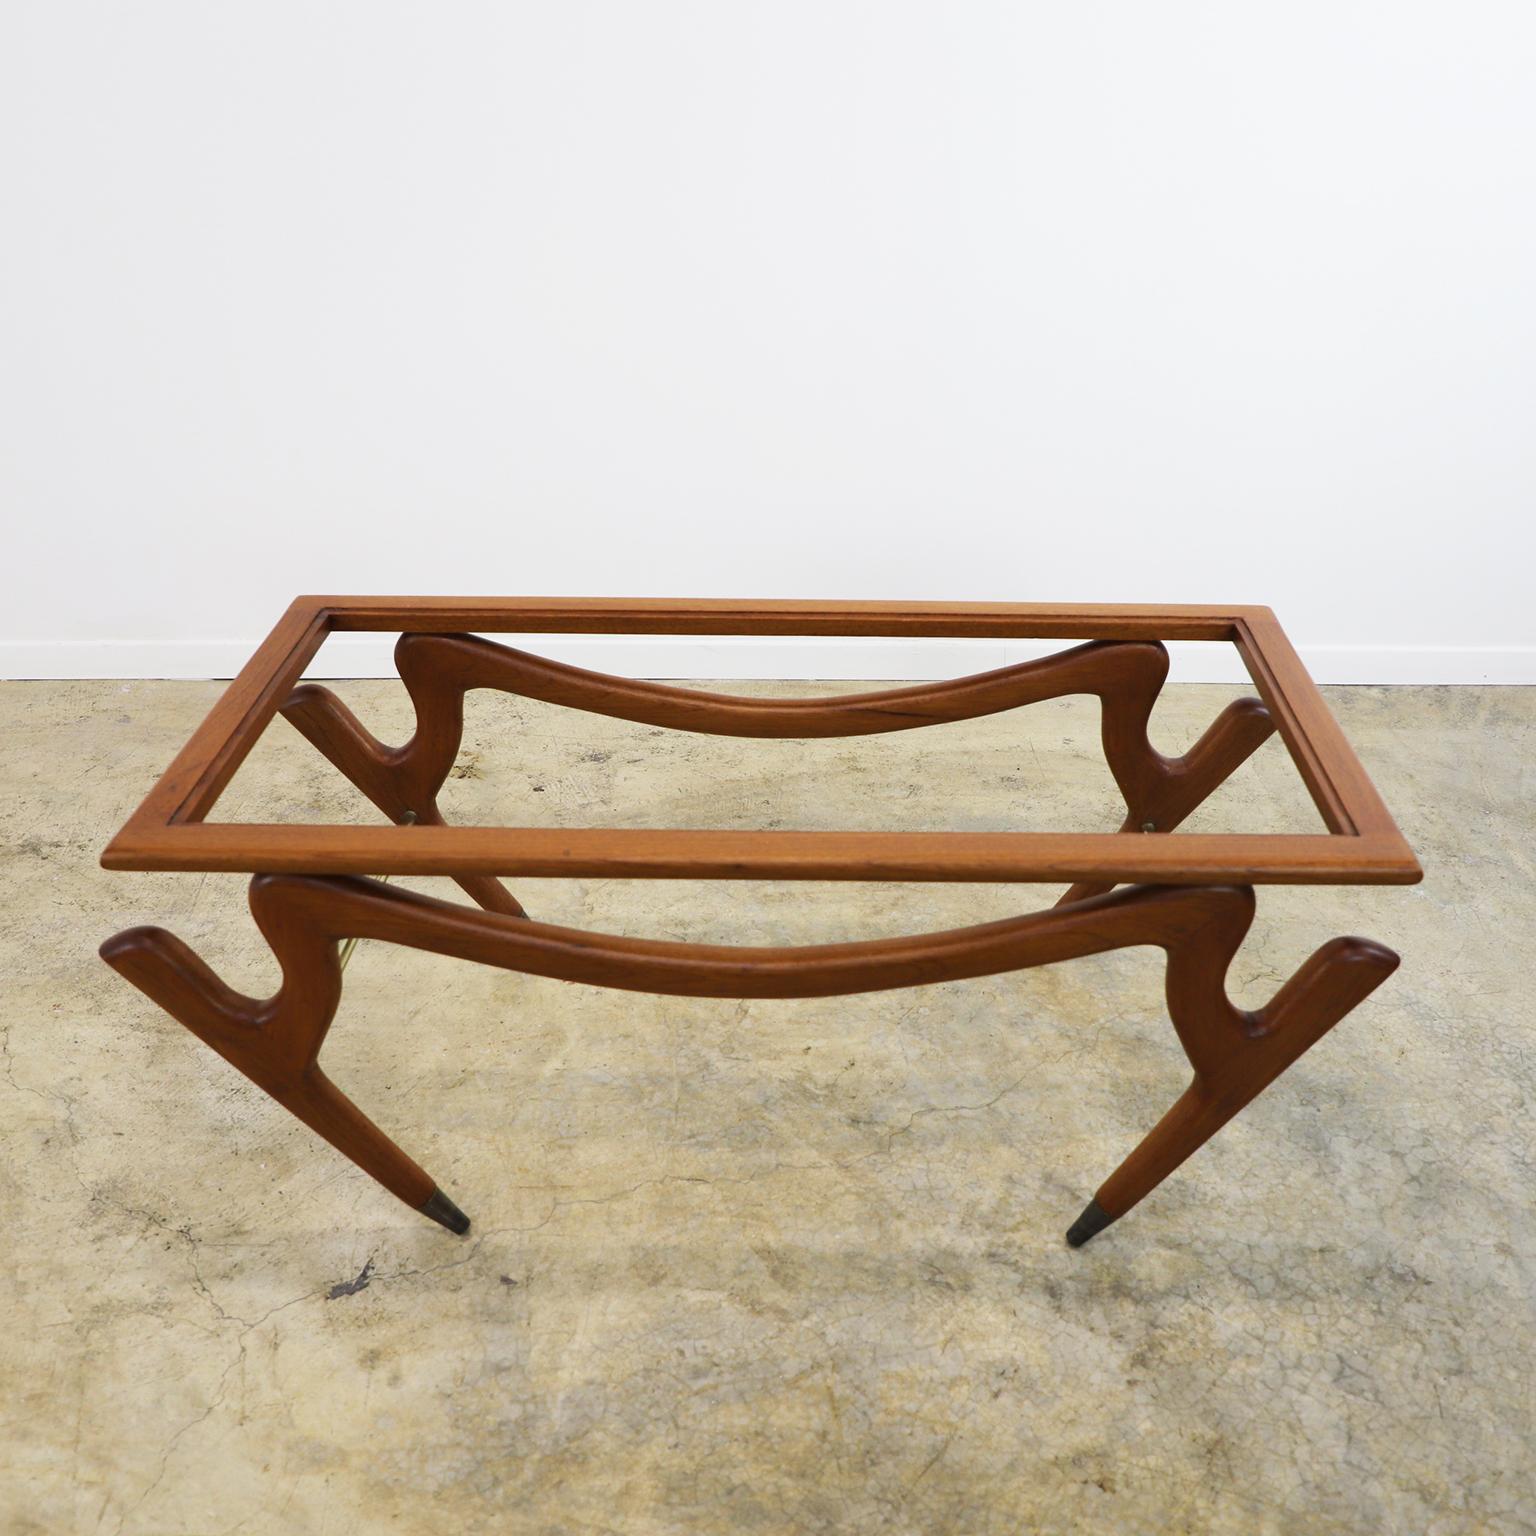 Nous vous proposons cette table basse au design étonnant et caractéristique d'Eugenio Escudero, fabriquée au Mexique en bois d'acajou, vers 1950. Nous n'incluons pas le verre pour une meilleure expédition.